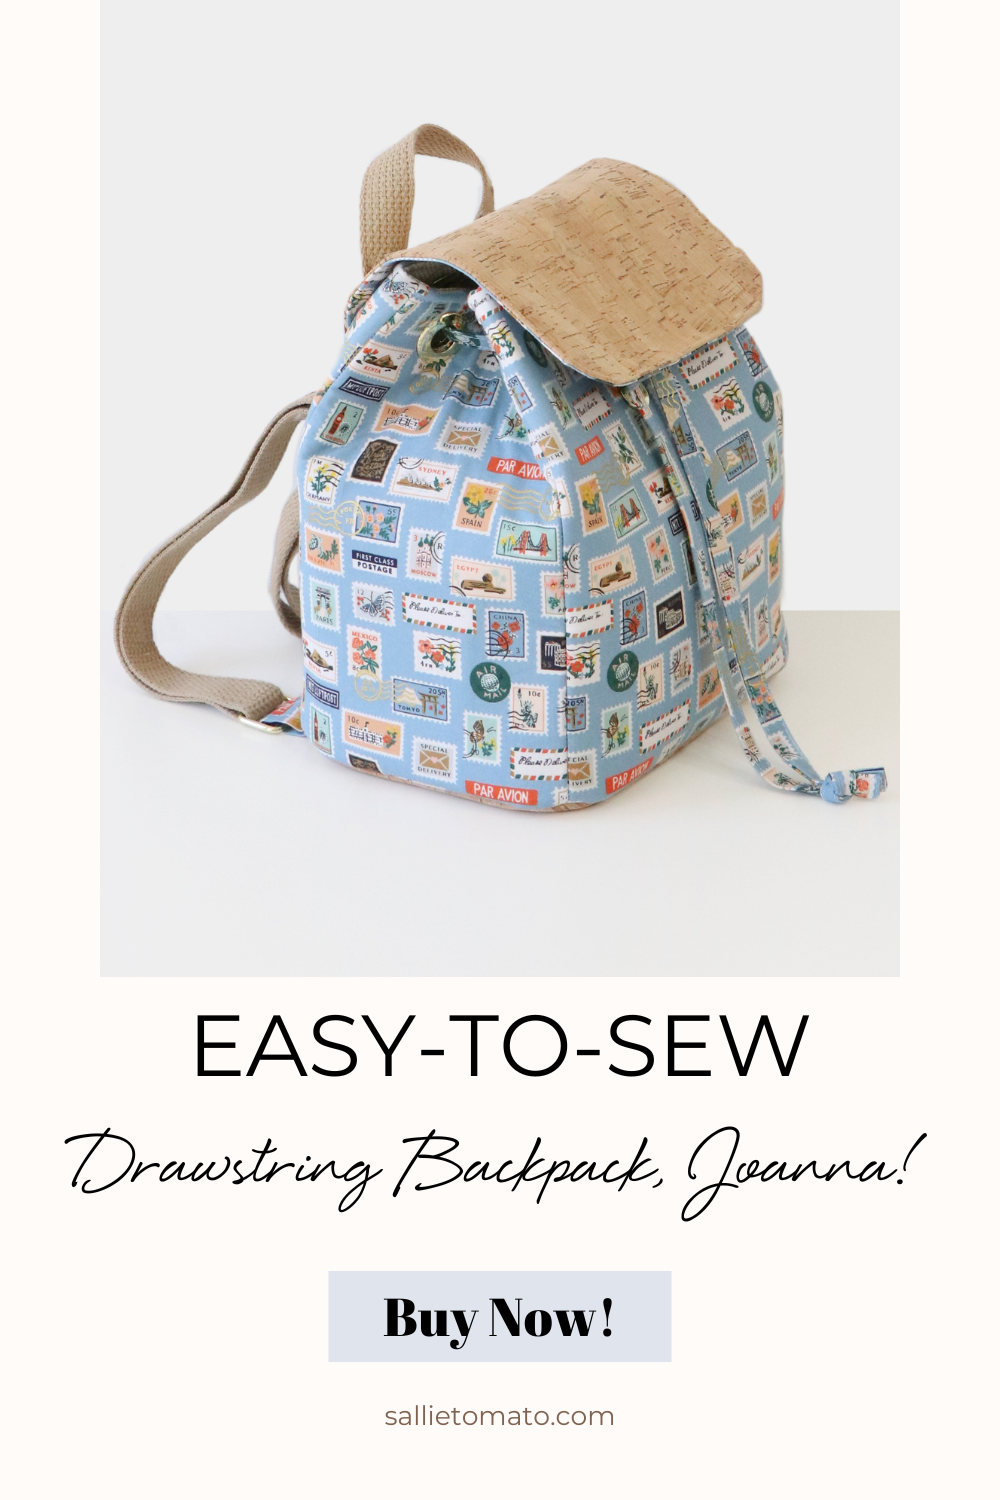 Meet, Joanna: Mini Drawstring Backpack | An Exclusive Missouri Star Pattern